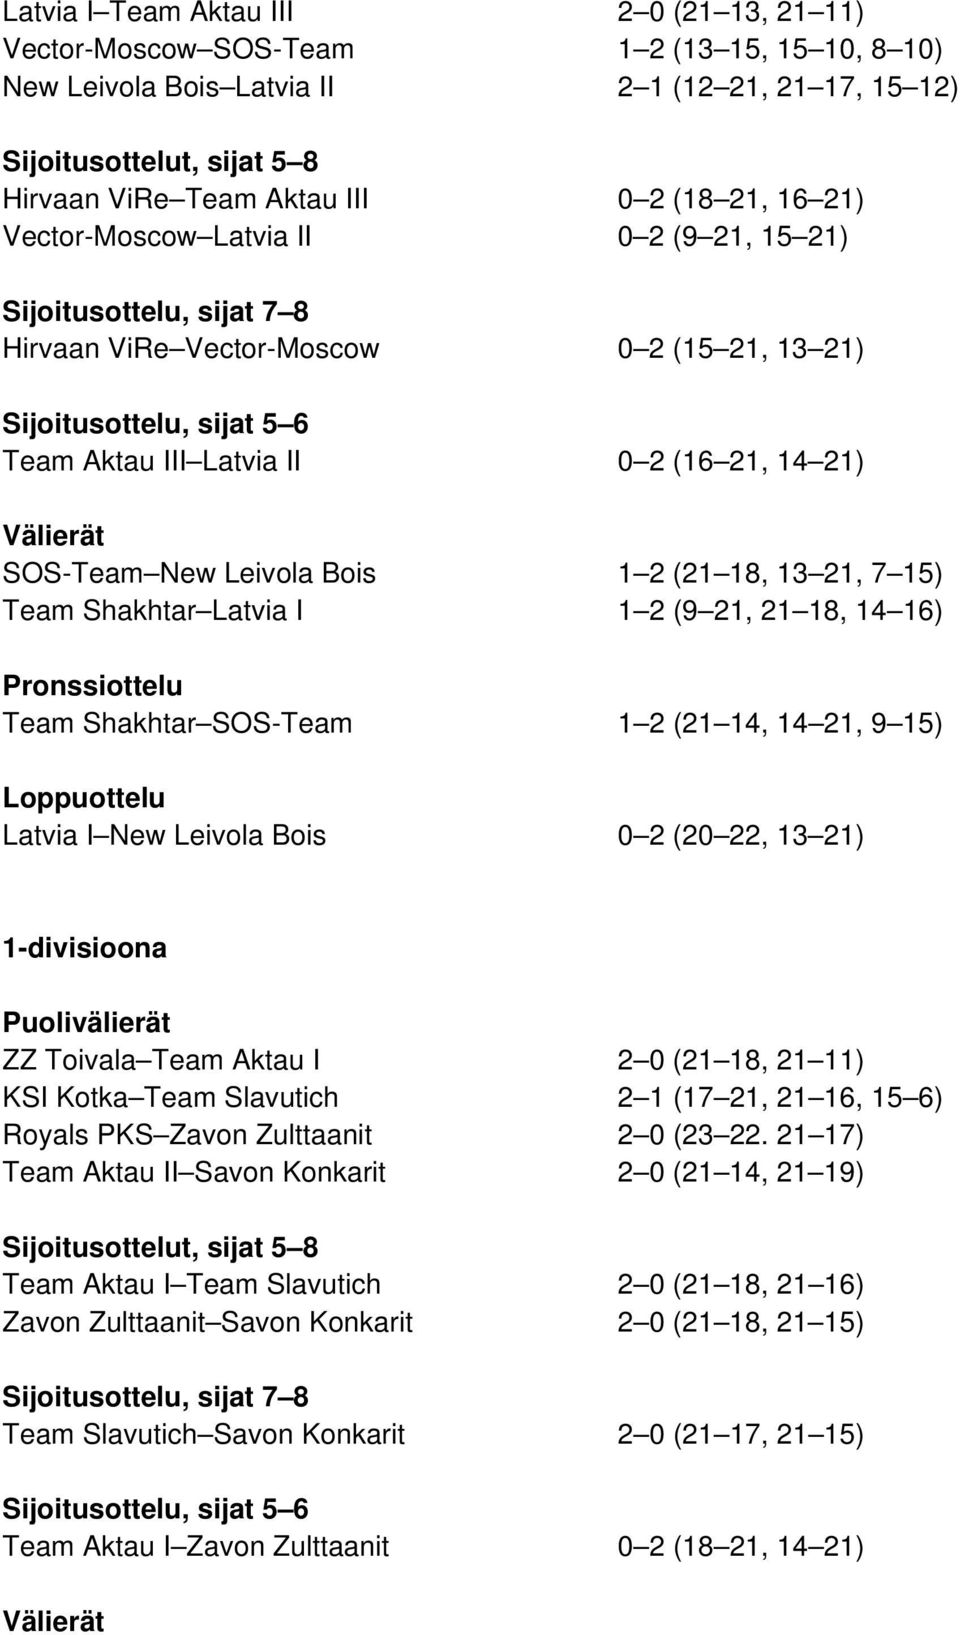 21) Välierät SOS-Team New Leivola Bois 1 2 (21 18, 13 21, 7 15) Team Shakhtar Latvia I 1 2 (9 21, 21 18, 14 16) Pronssiottelu Team Shakhtar SOS-Team 1 2 (21 14, 14 21, 9 15) Loppuottelu Latvia I New